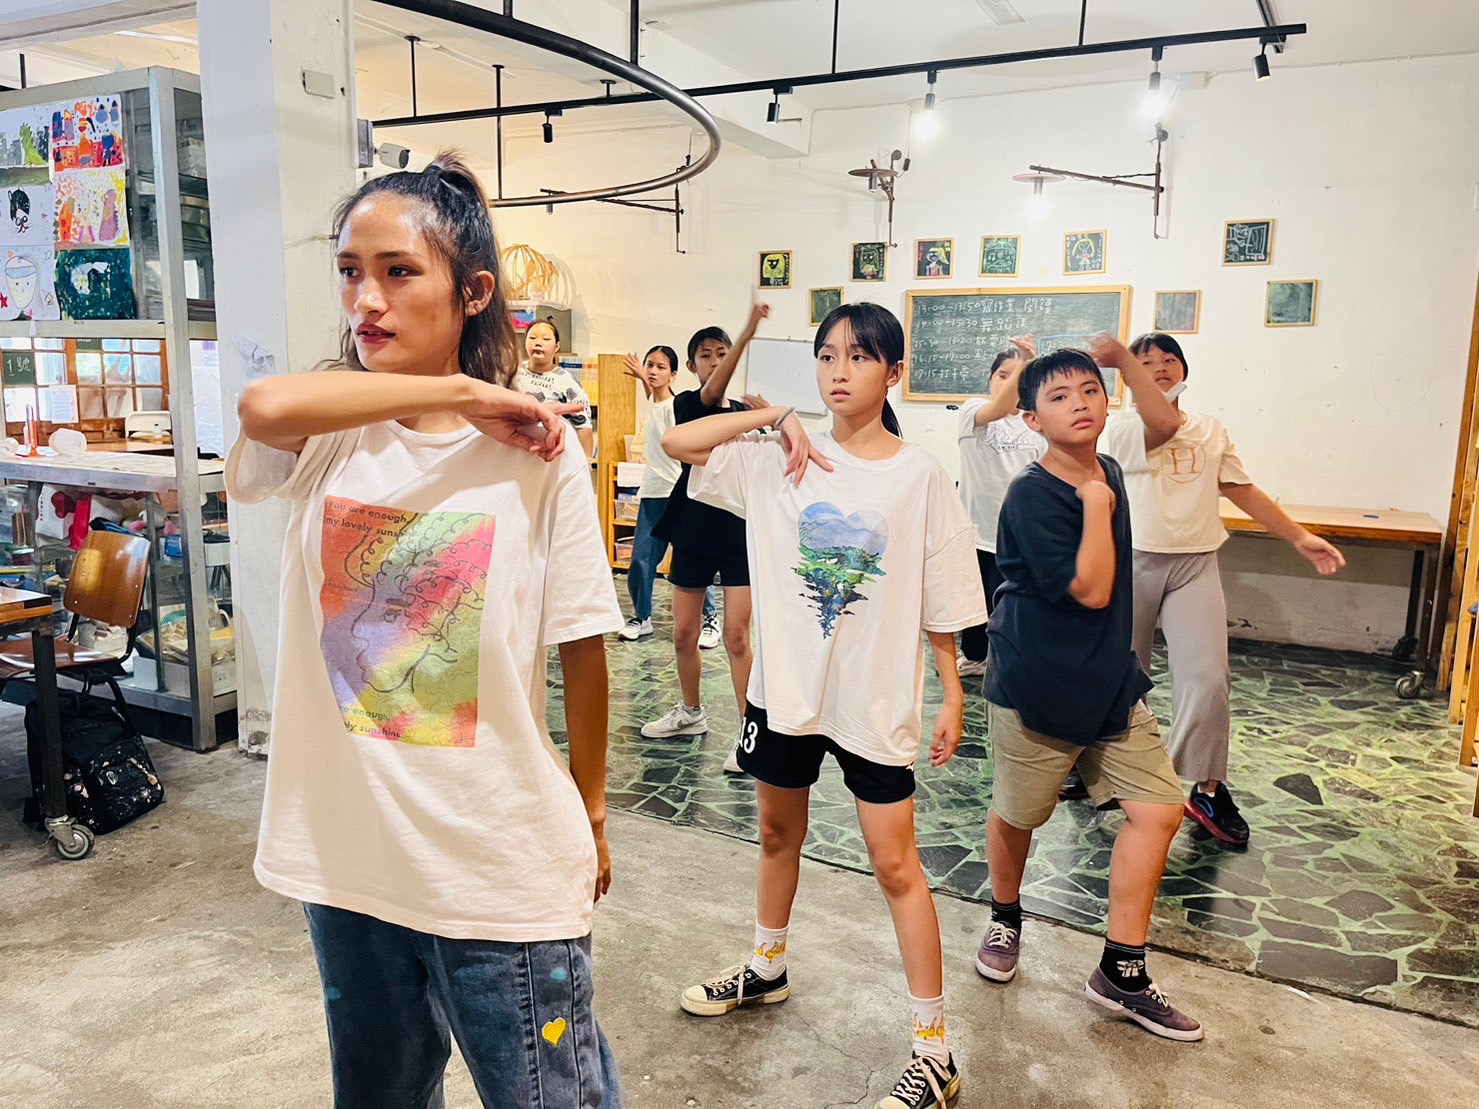 社團法人籿苗教育發展協會團隊讓對舞蹈有興趣的青少女擔任舞蹈老師，發揮自身專長，拓展自我生涯發展。